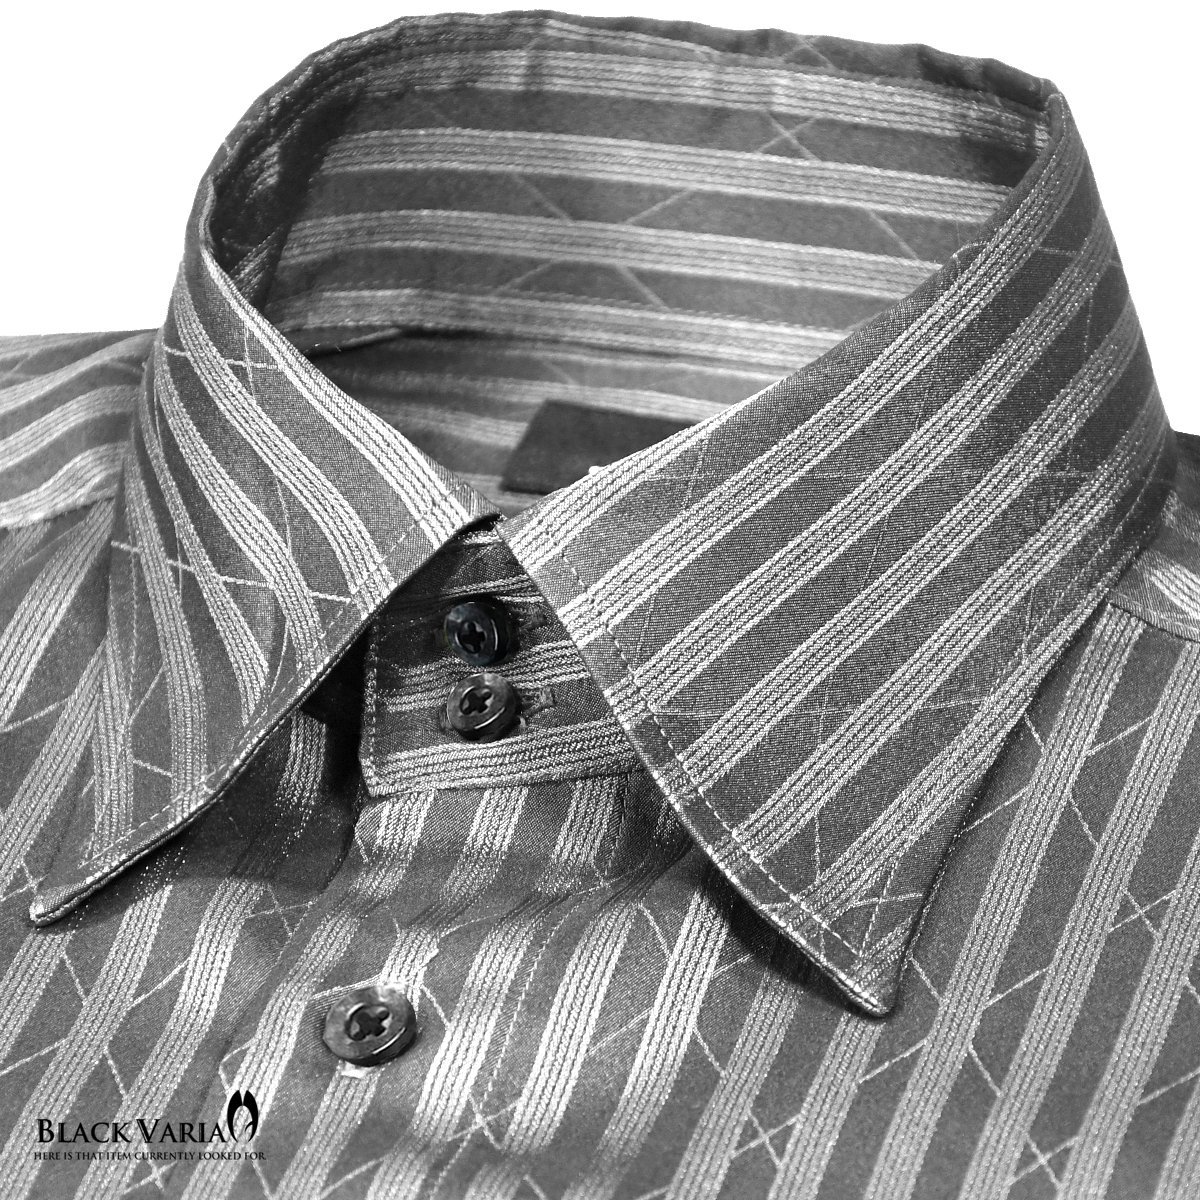 a191850-gy BLACK VARIAドゥエボットーニ パイソン蛇柄 ジャガード [レギュラーカラー]ドレスシャツ メンズ(グレー灰シルバー銀) XL_画像2